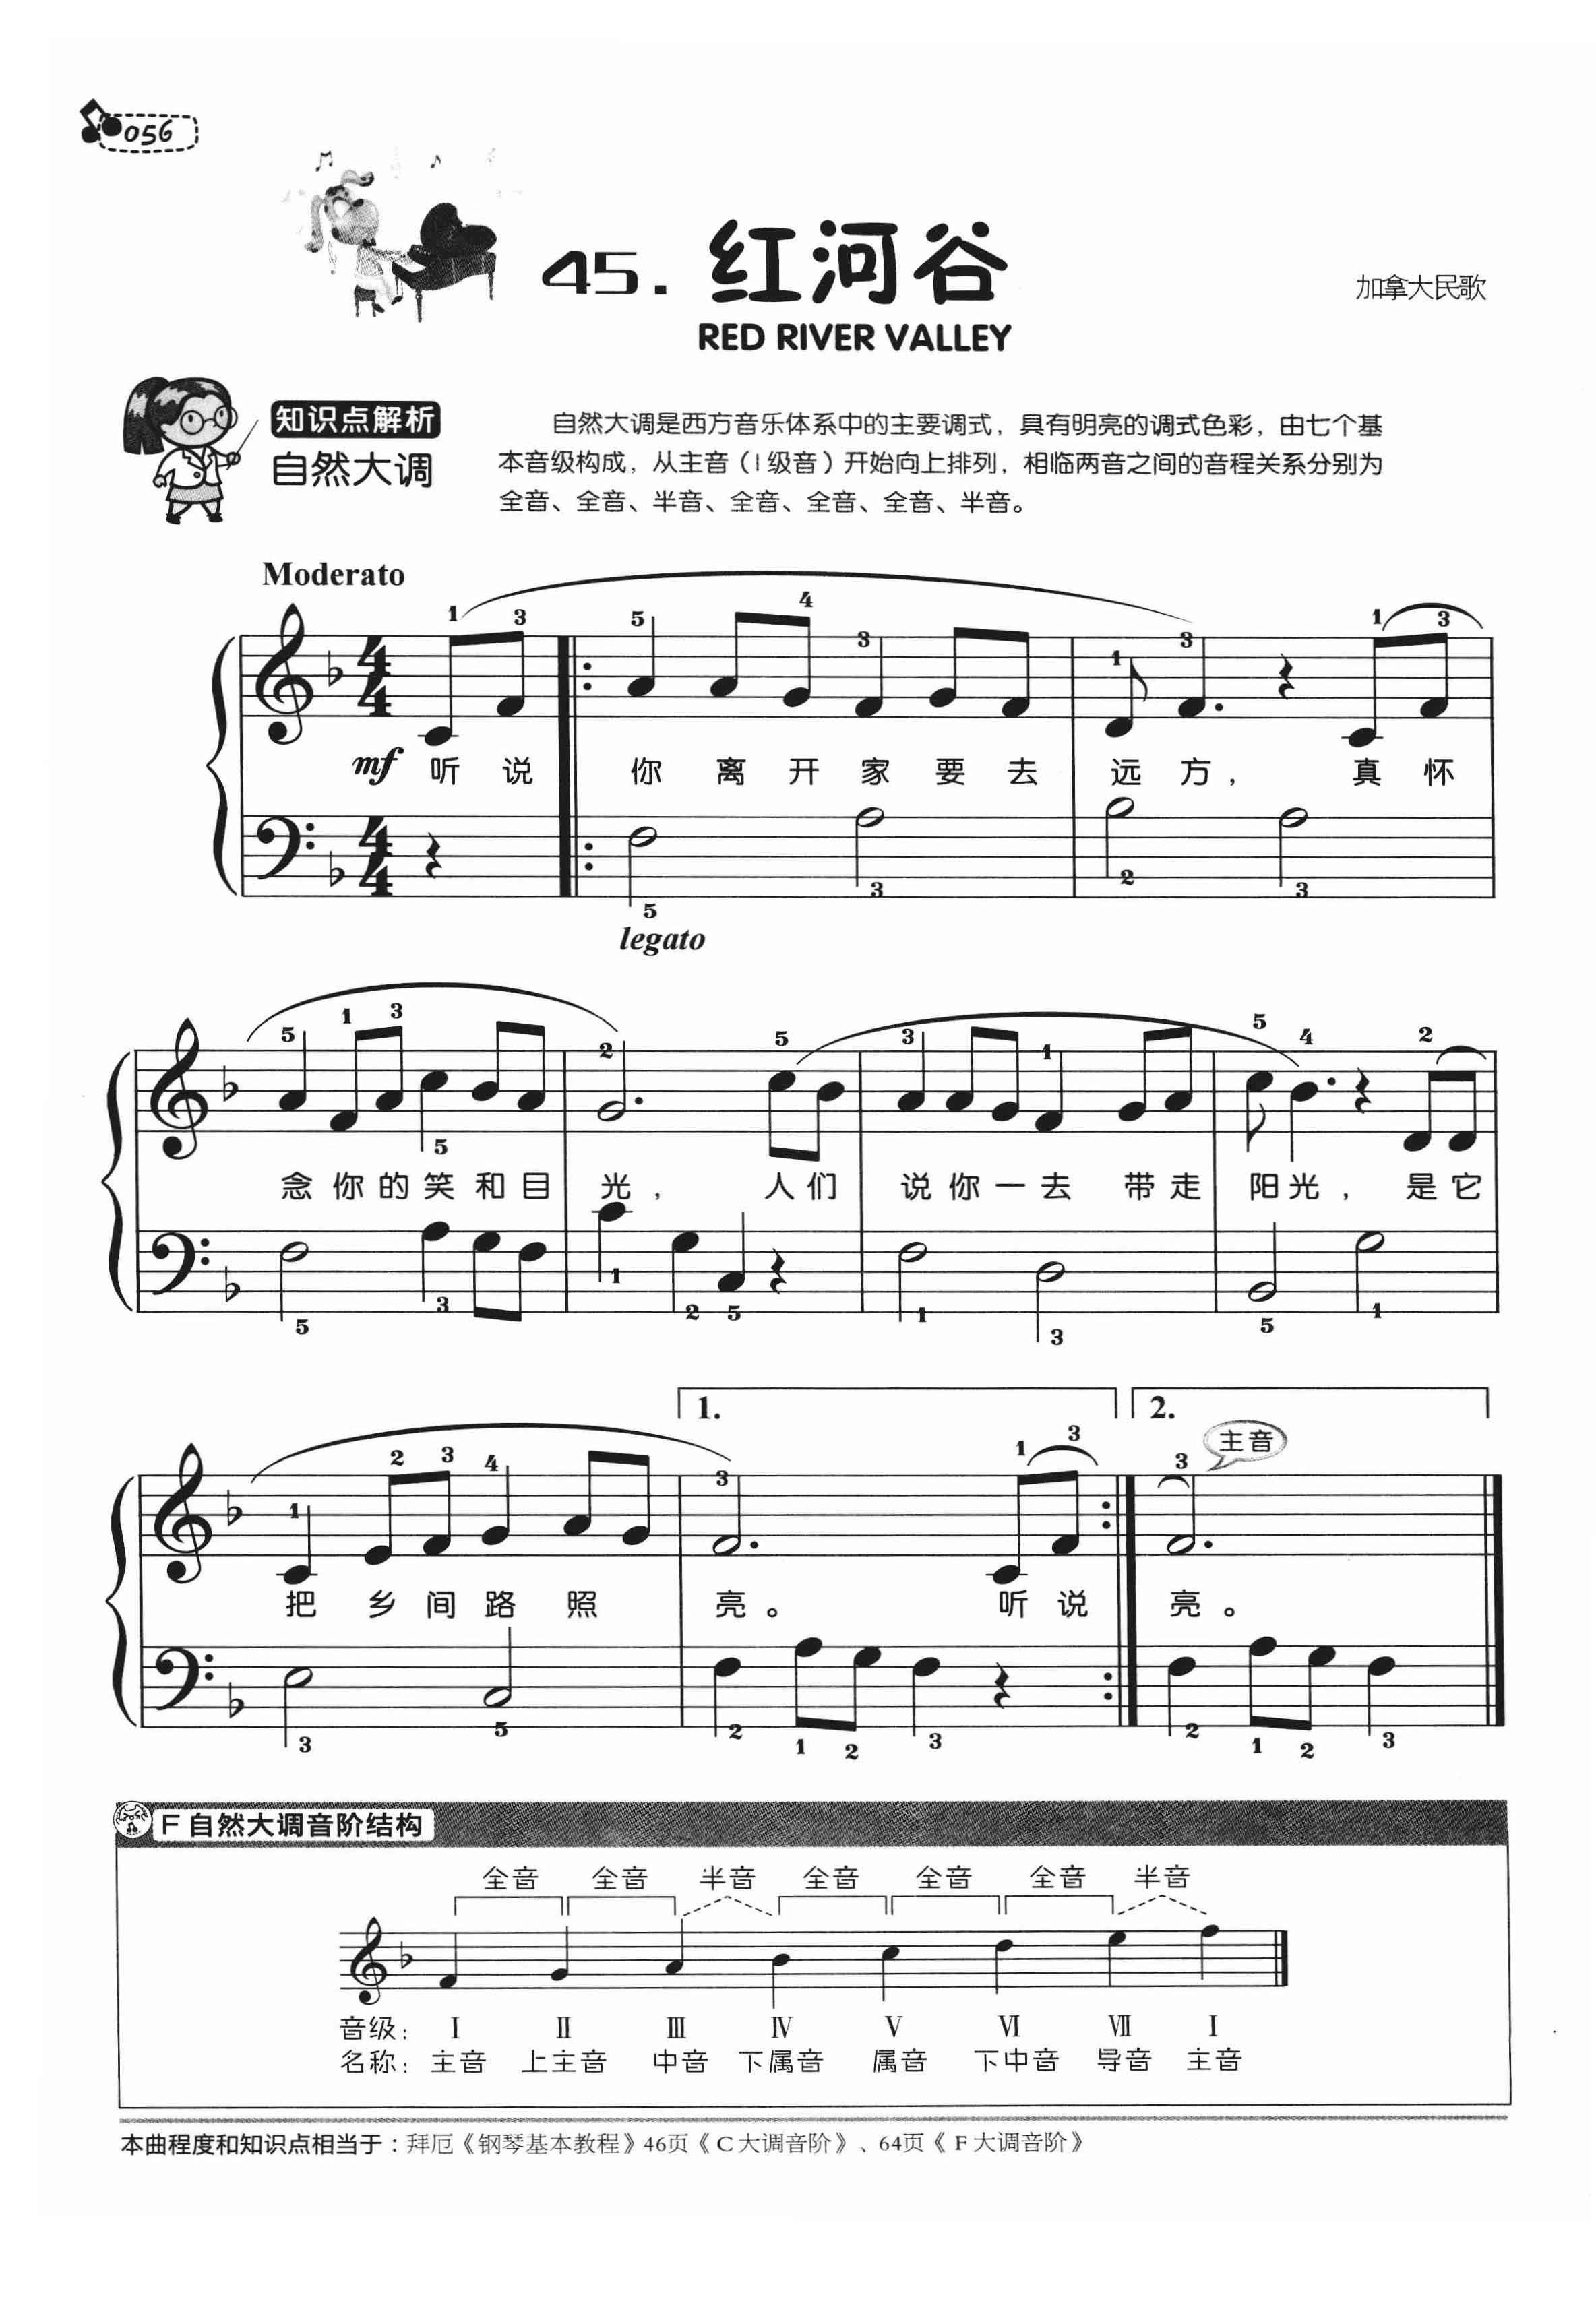 钢琴曲简谱网(钢琴简谱百度百科)